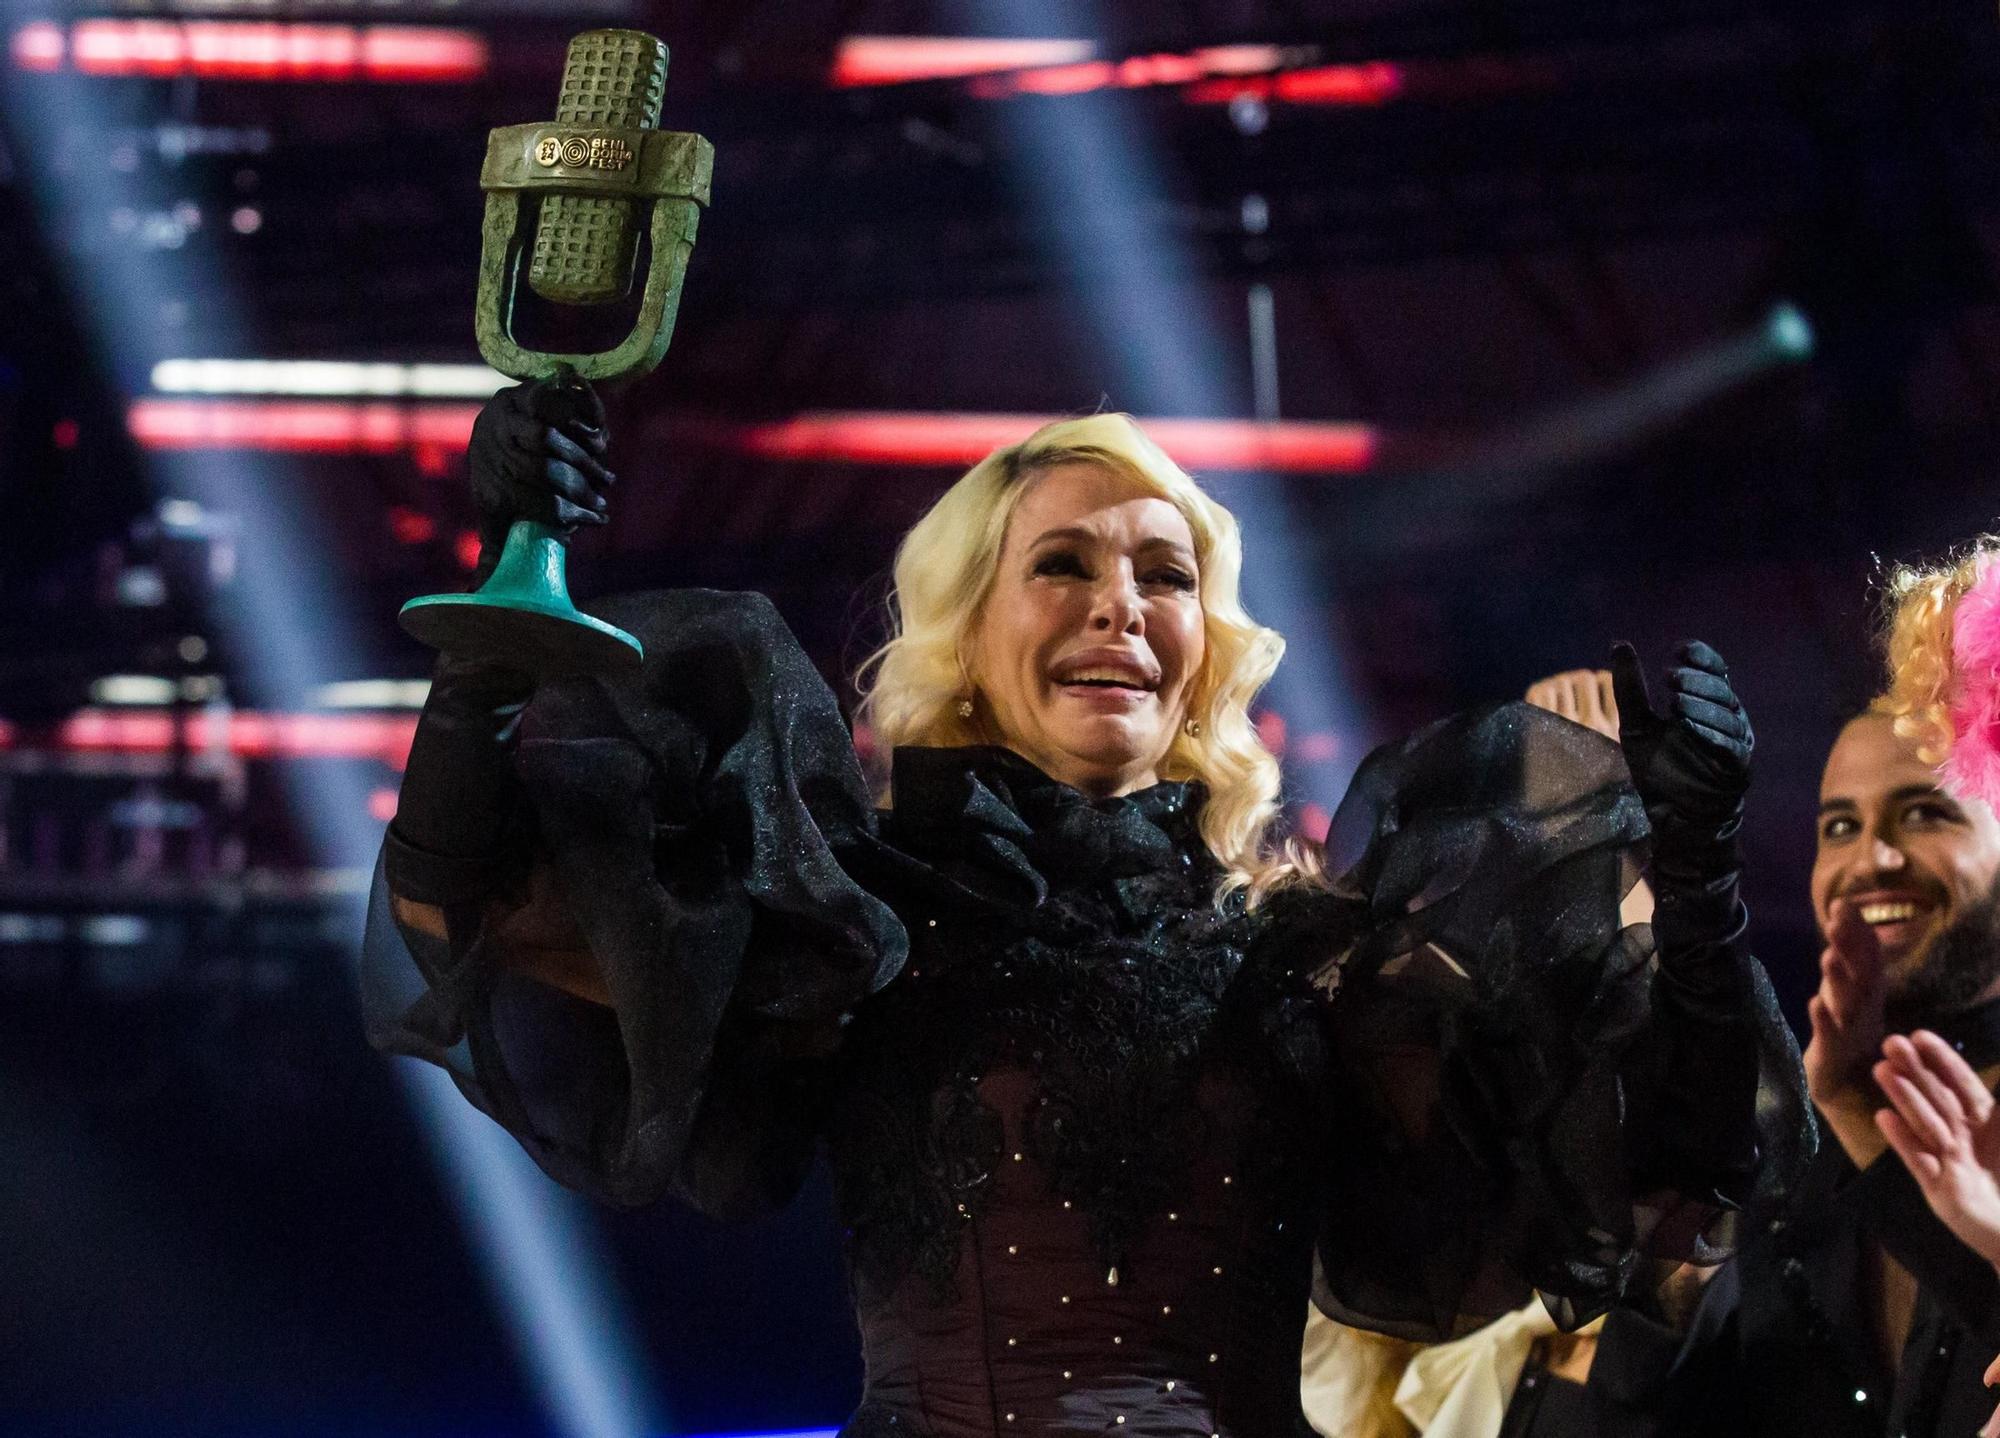 Qué opciones tiene Nebulossa en Eurovisión? Los expertos analizan 'Zorra